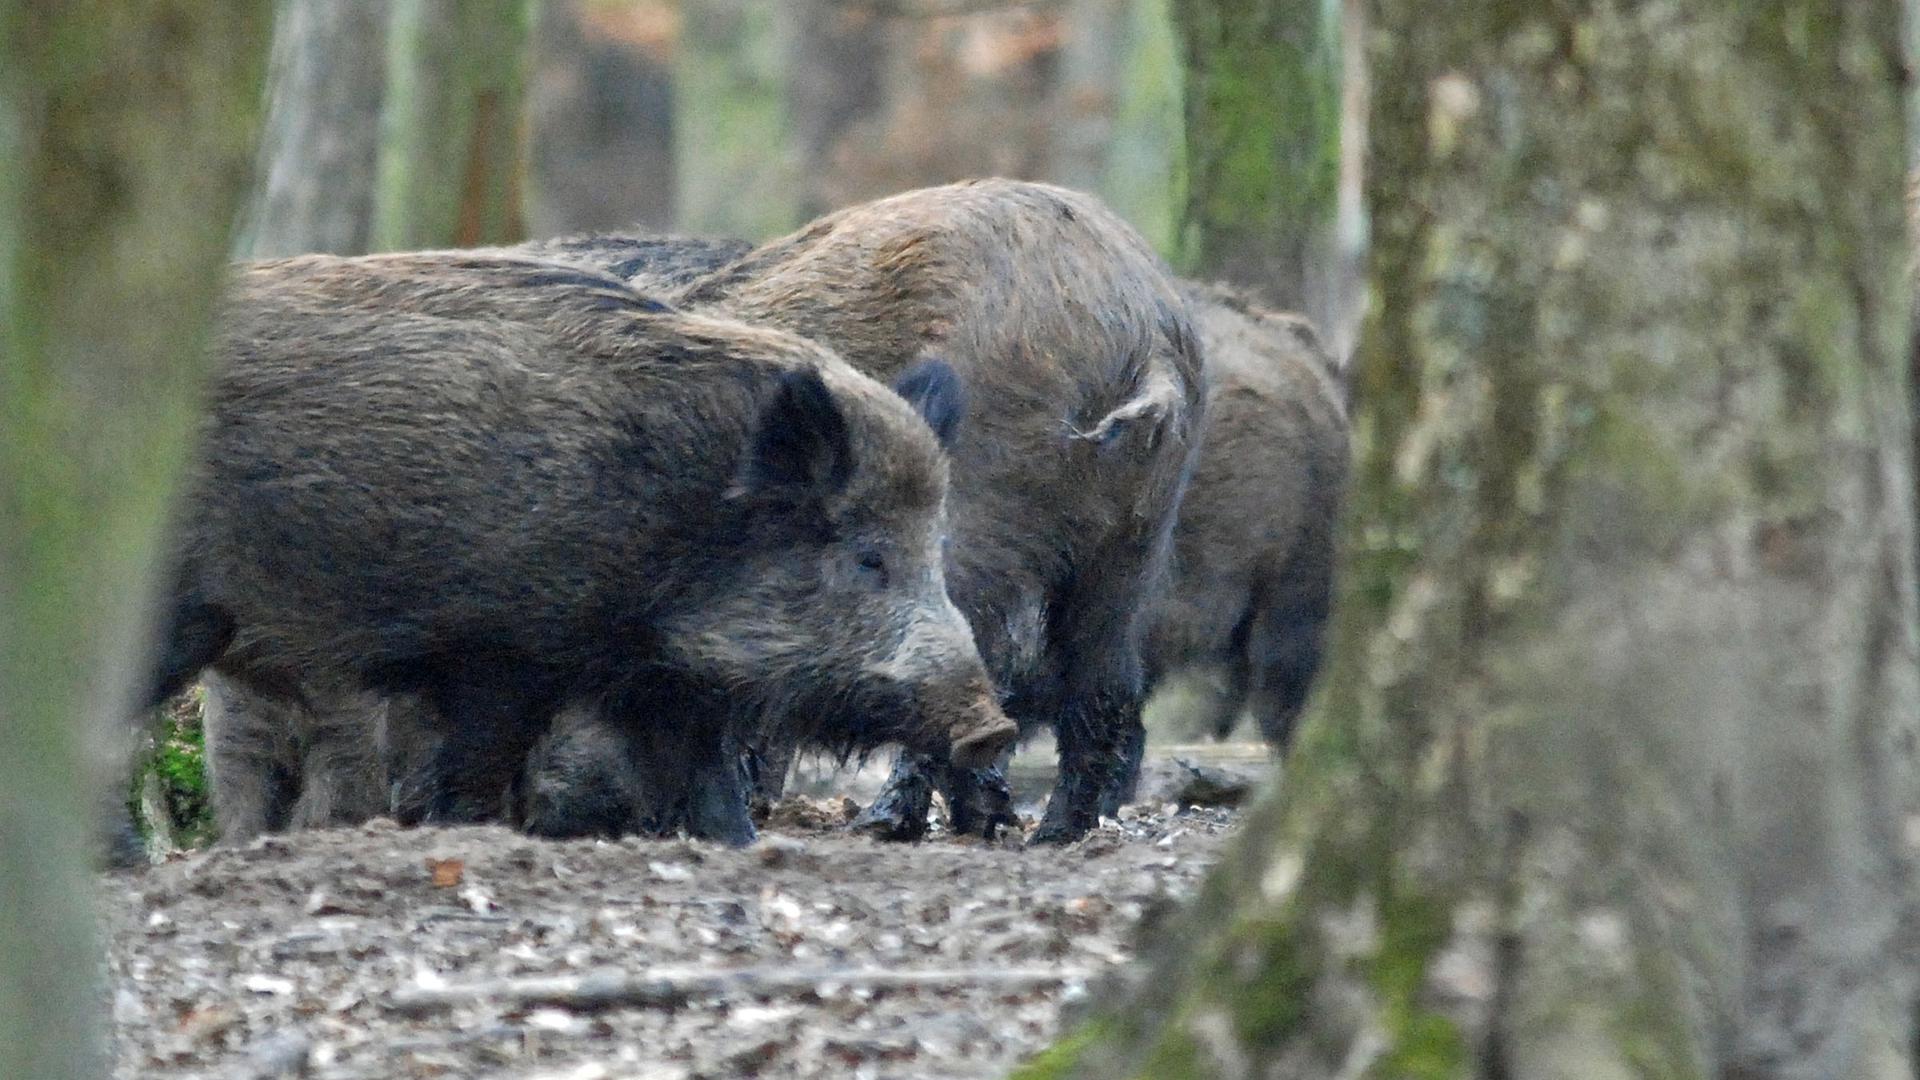 Wildschweine sind im Wald in Rotten unterwegs